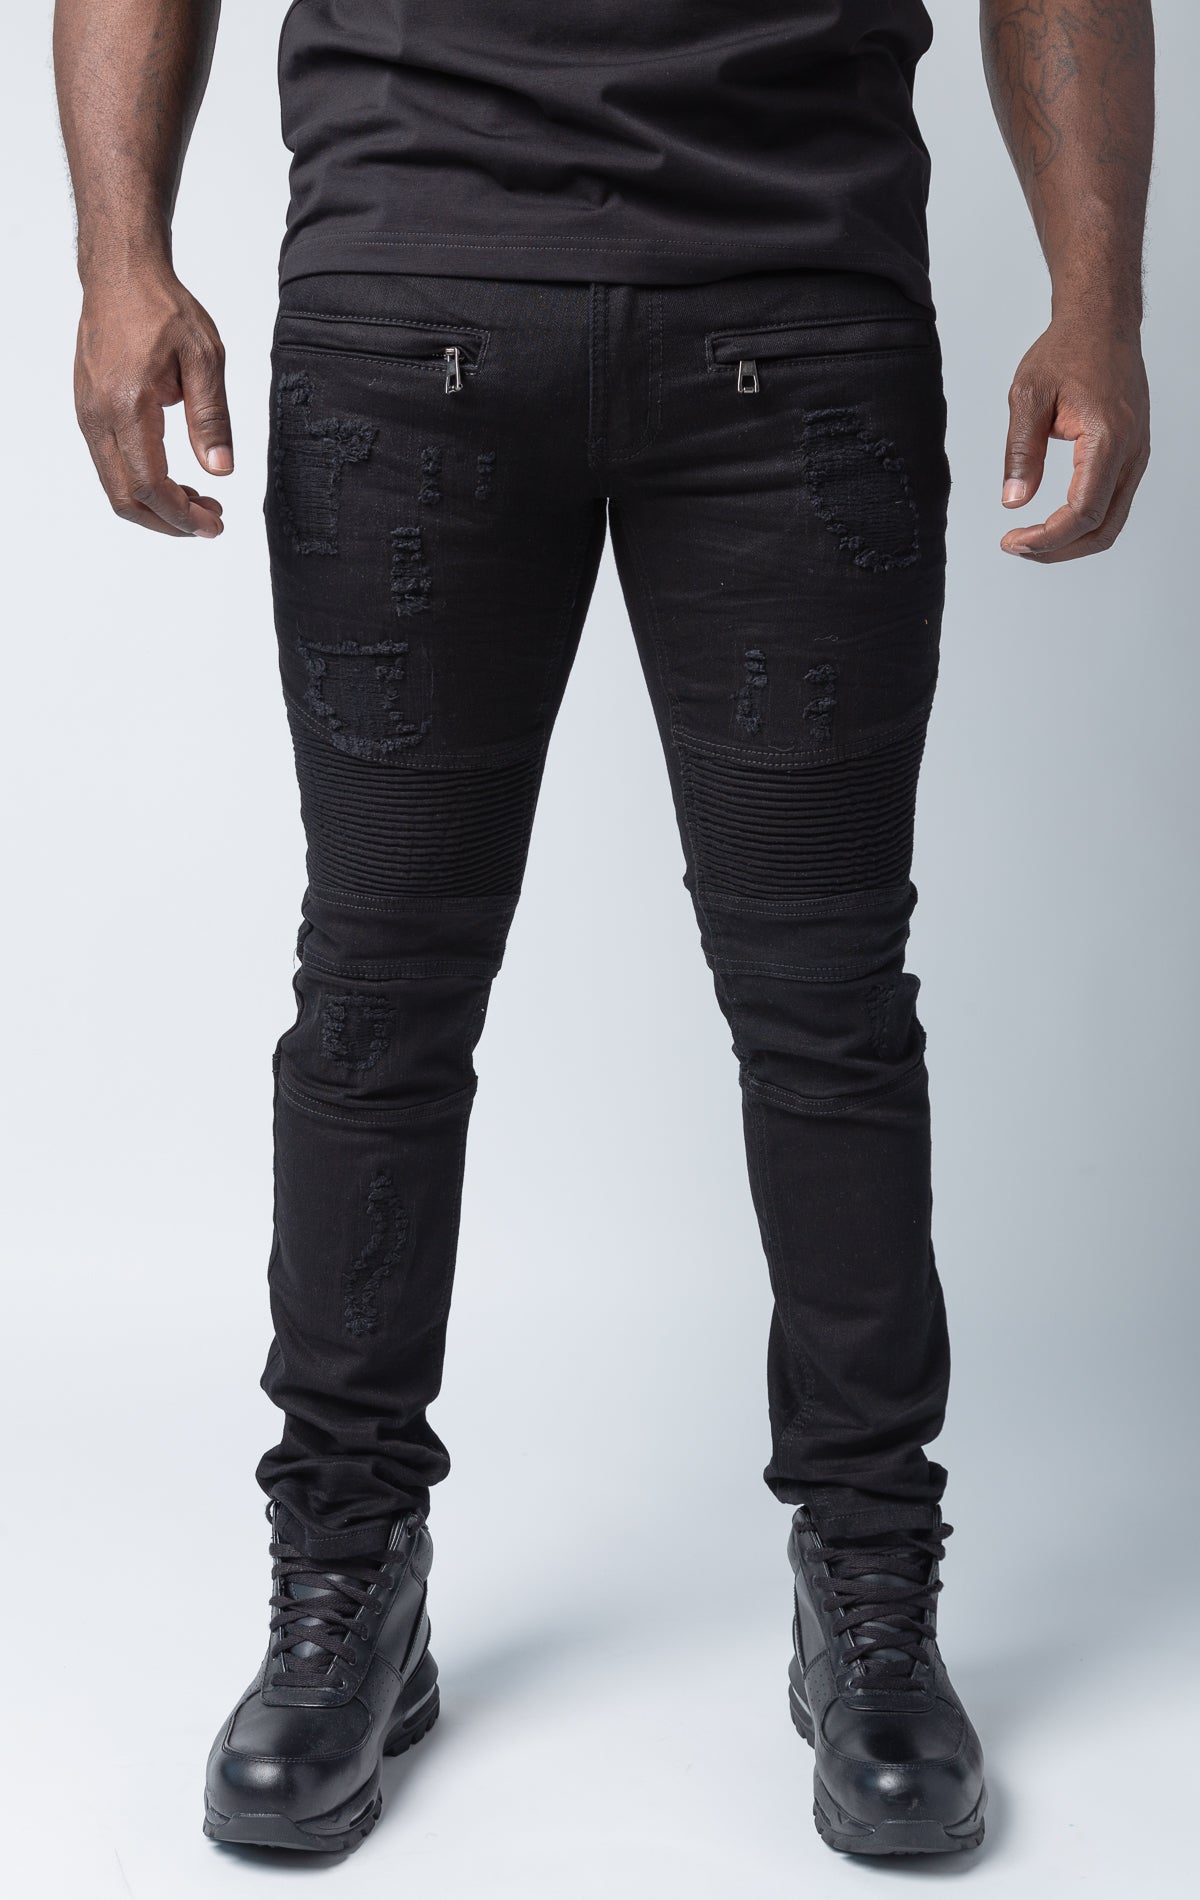 Black pants with rip and repair design and slim fit